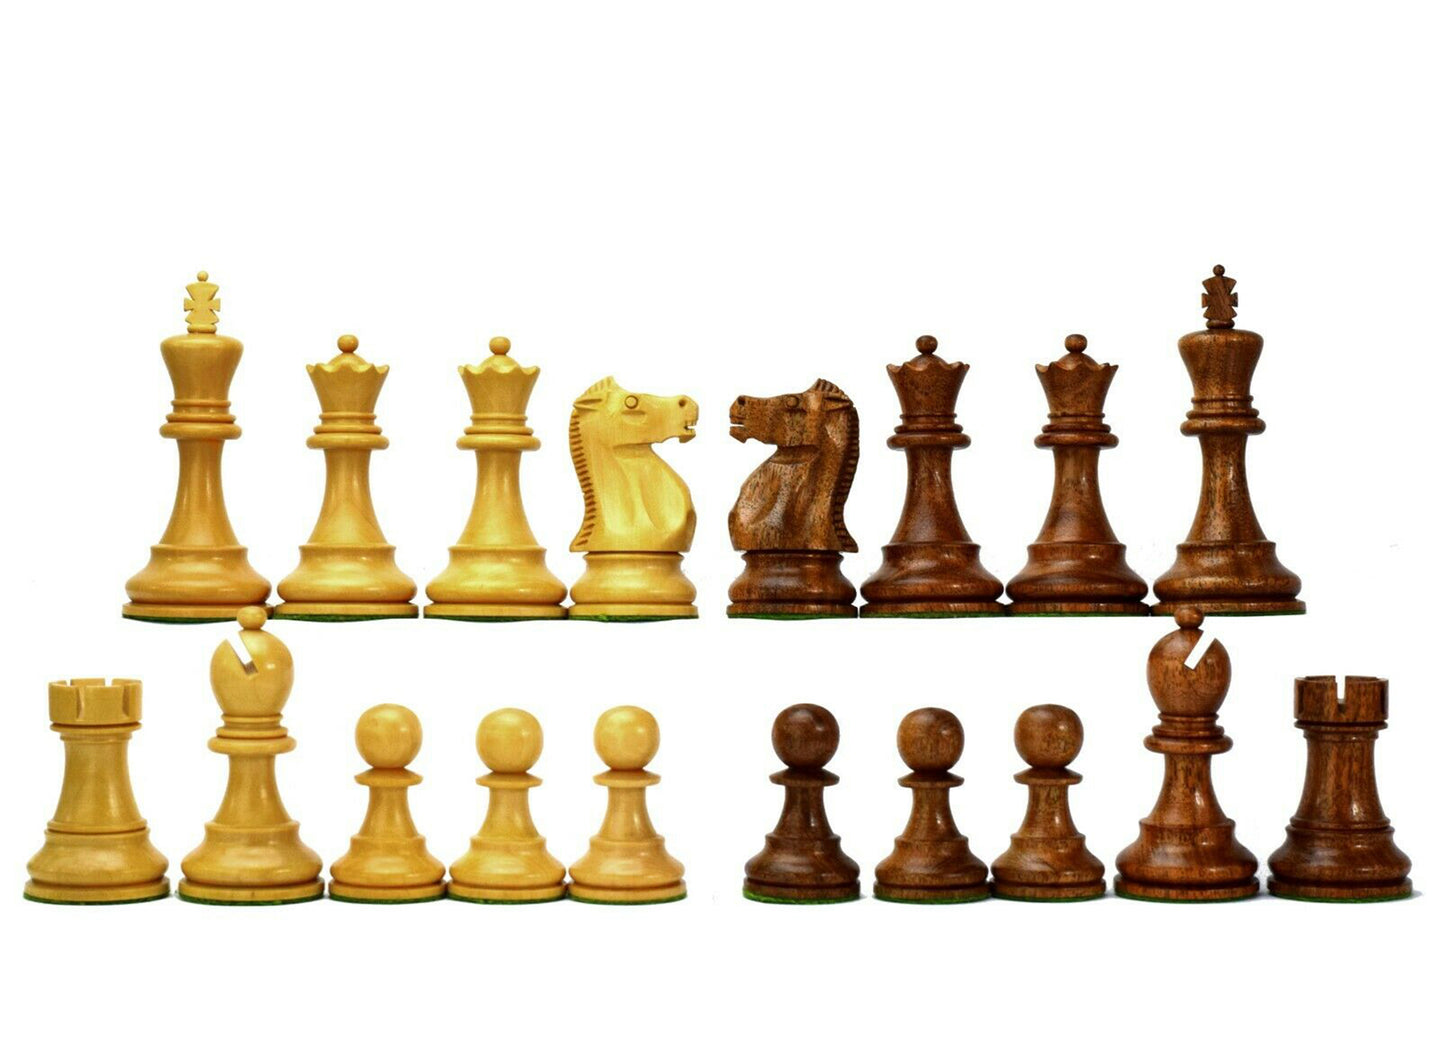 Série Fischer-Spassky (Campeonato Mundial de Xadrez 1972) - Peças de Xadrez em Madeira de Acácia 3,75